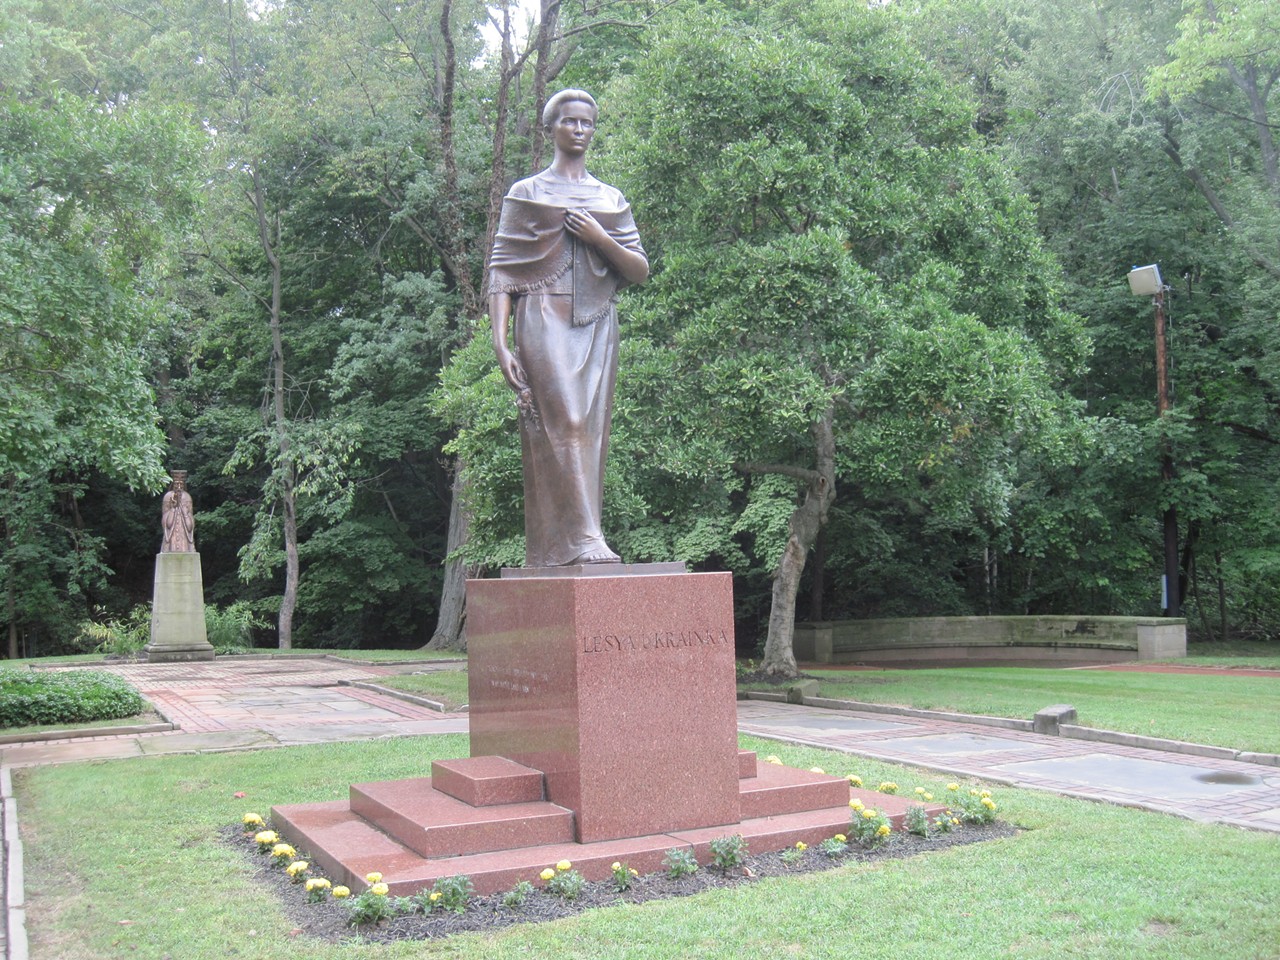 Lesya Ukrainka stands over the garden.